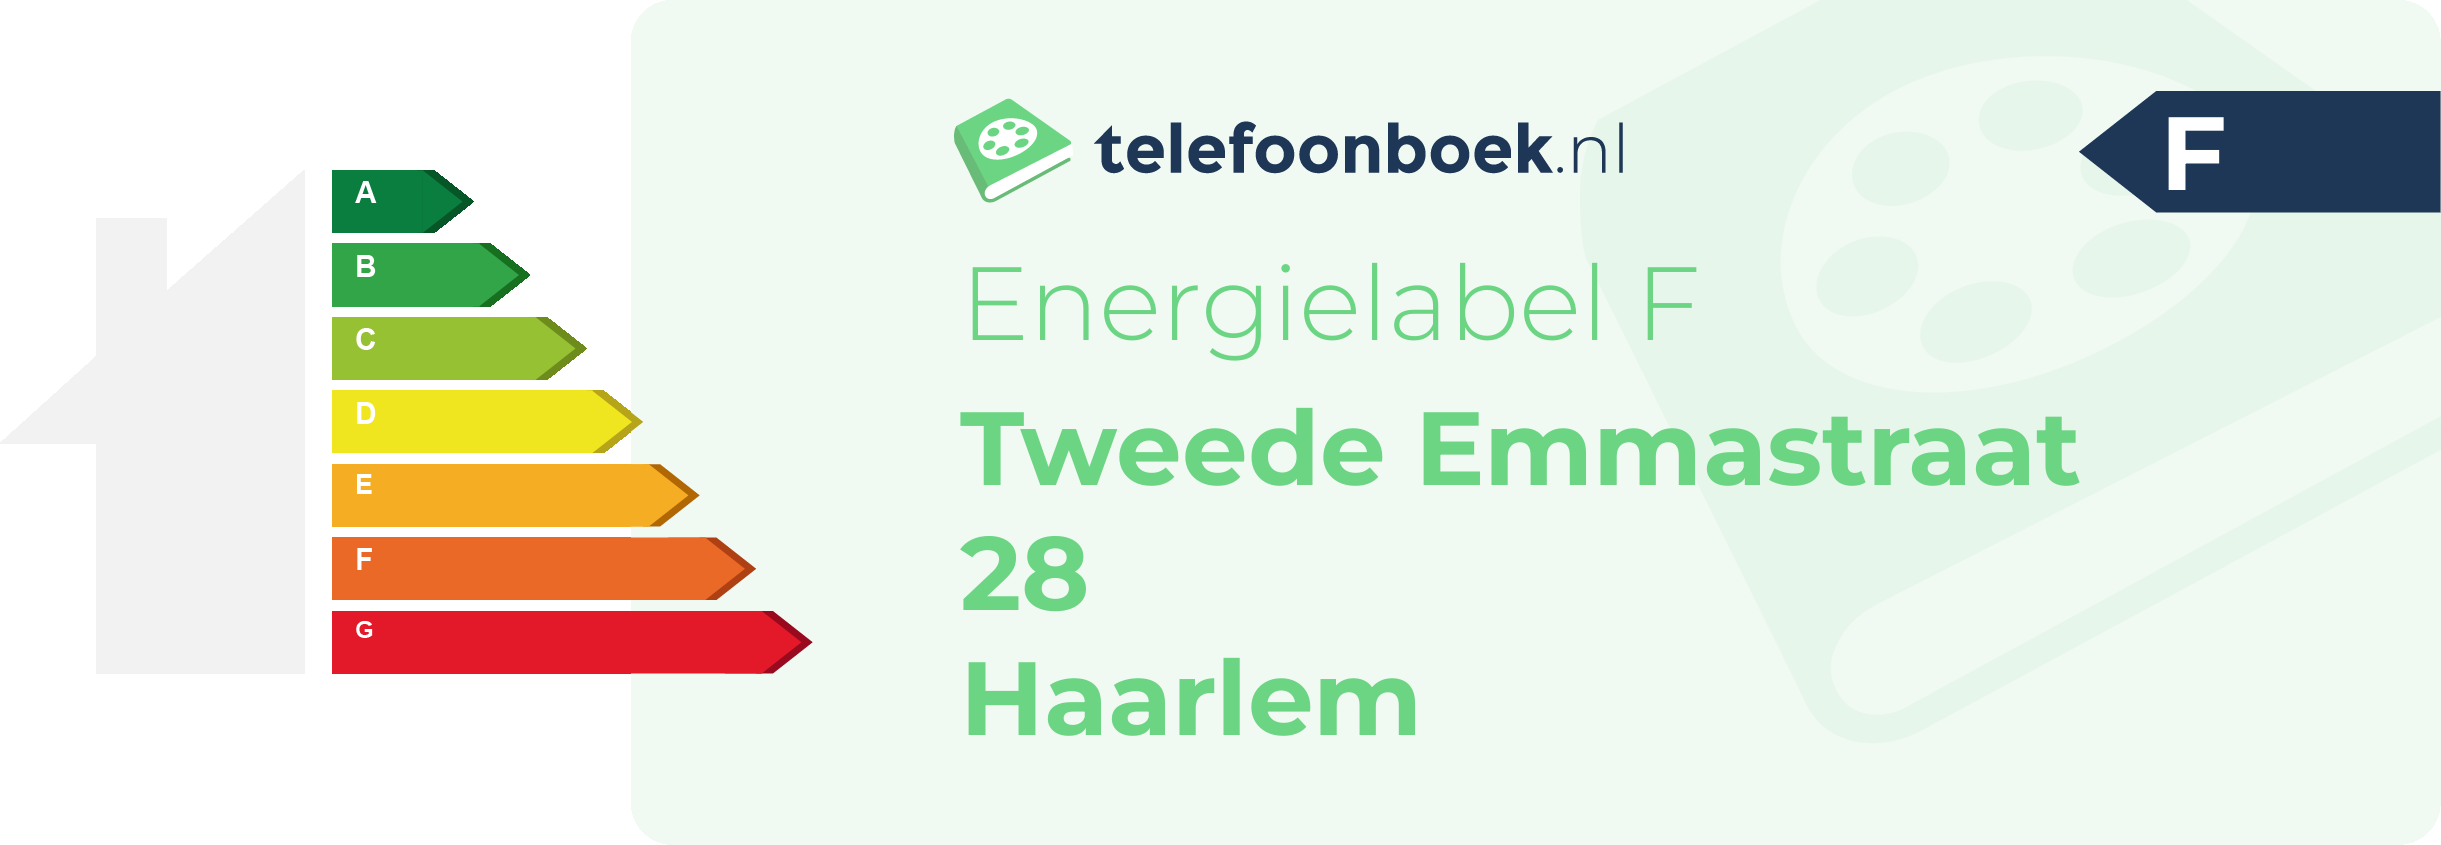 Energielabel Tweede Emmastraat 28 Haarlem